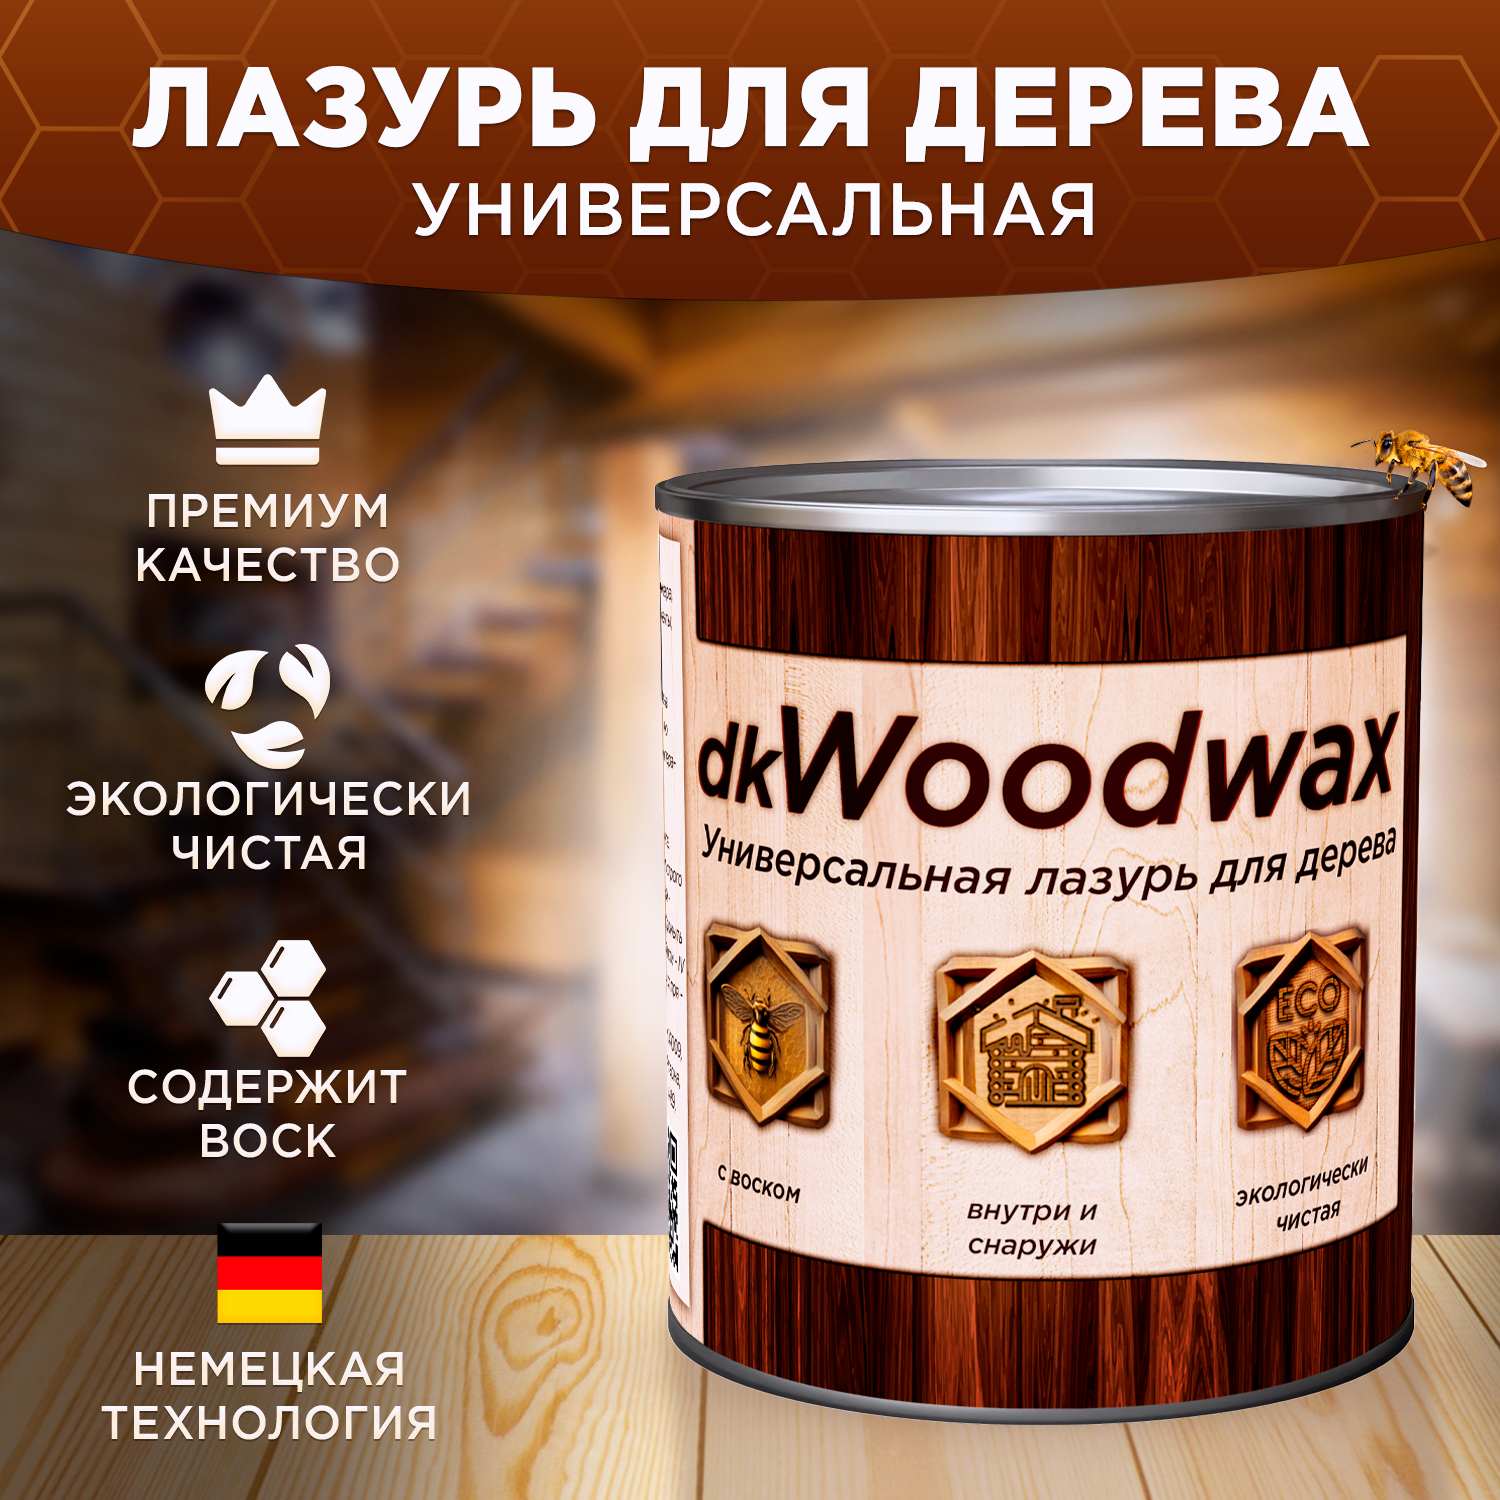 dkWoodwax - антисептик для древесины, который защищает и украшает.